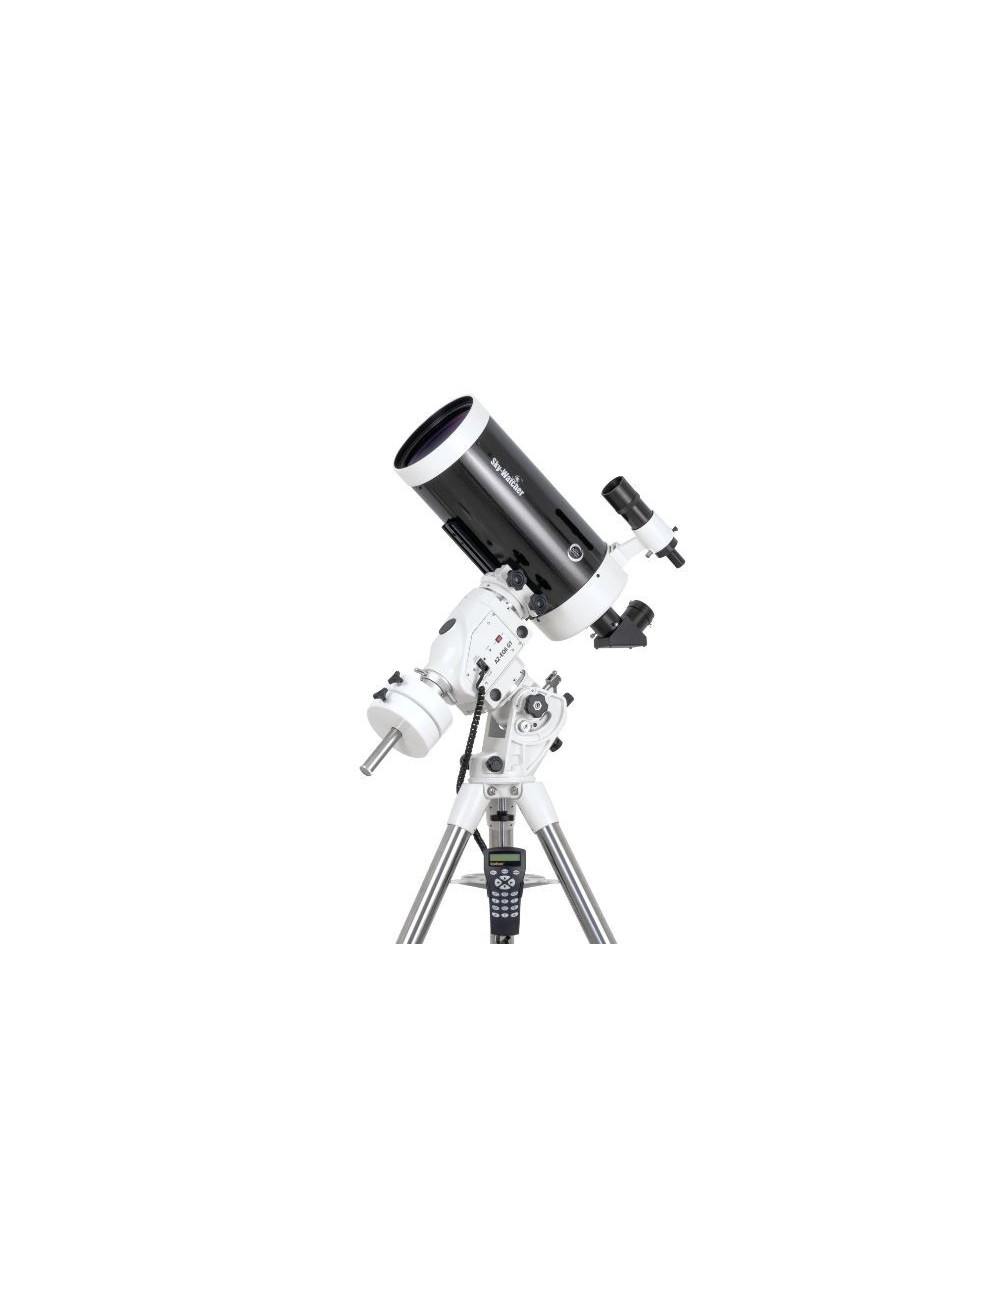 Télescope Sky-Watcher Mak180 Black Diamond sur AZEQ6 Pro Go-To